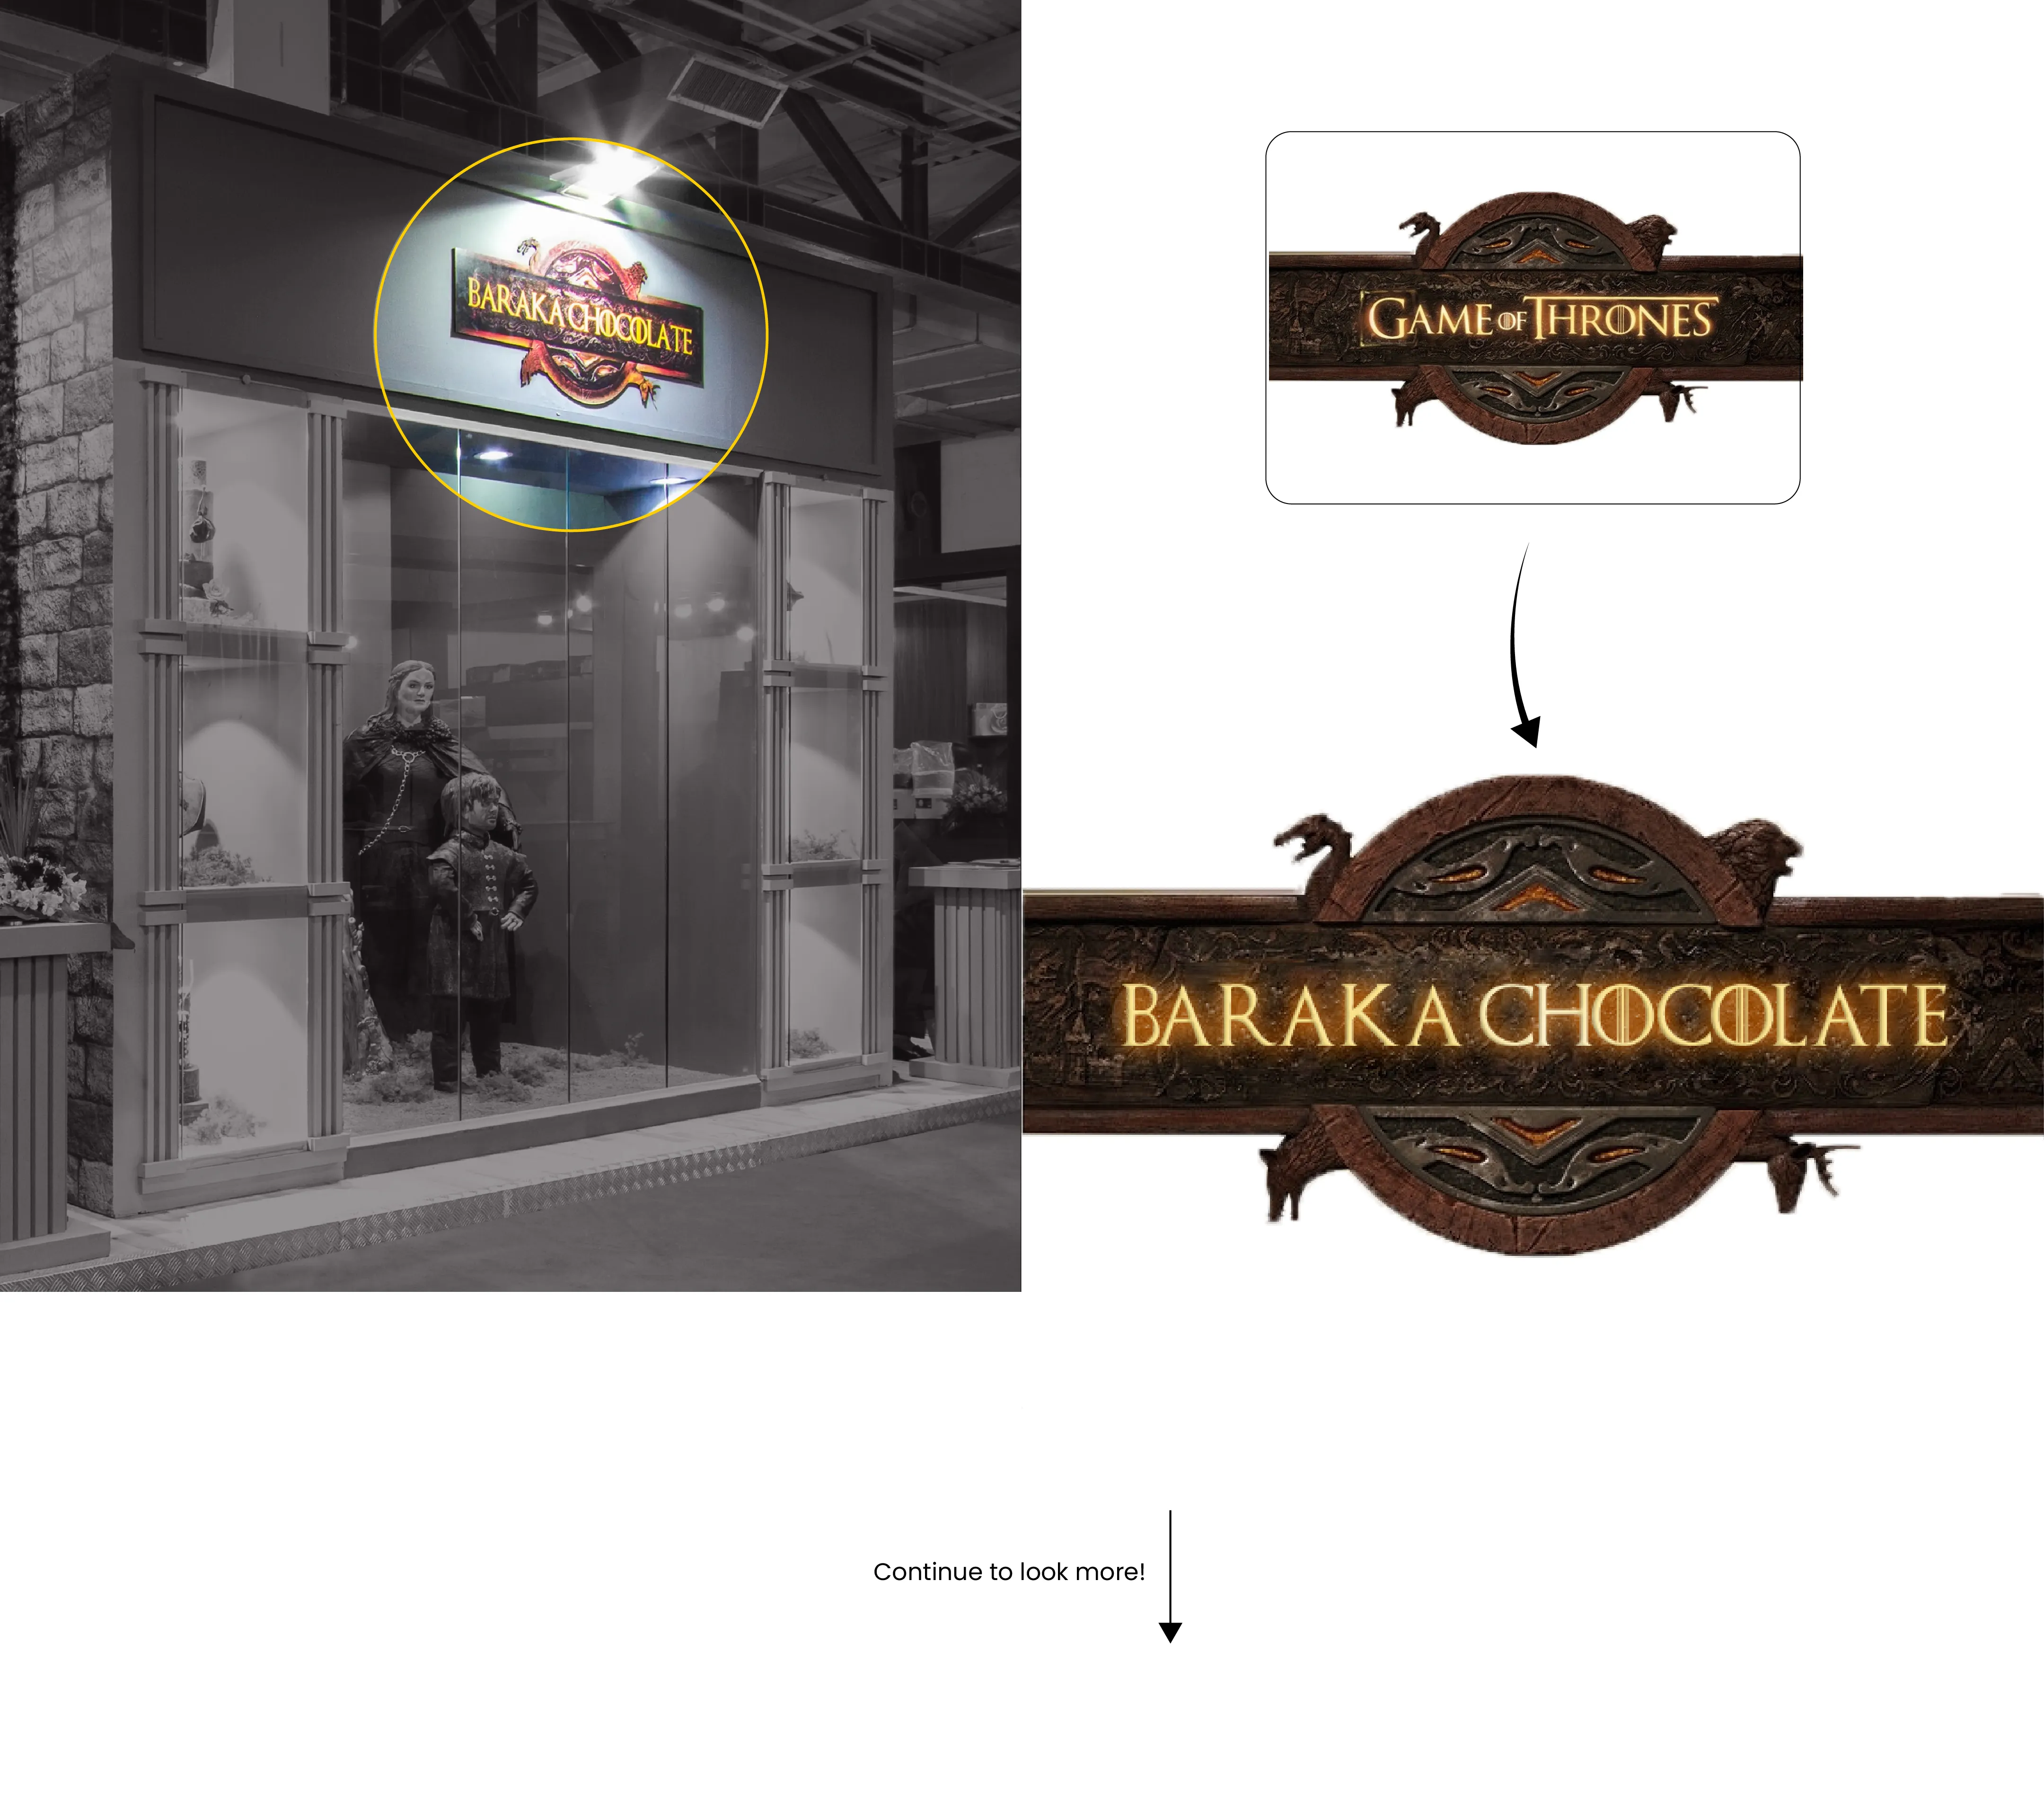   طراحی غرفه و غرفه سازی نمایشگاهی شکلات باراکا نمایشگاه شیرینی و شکلات تهران 1398 